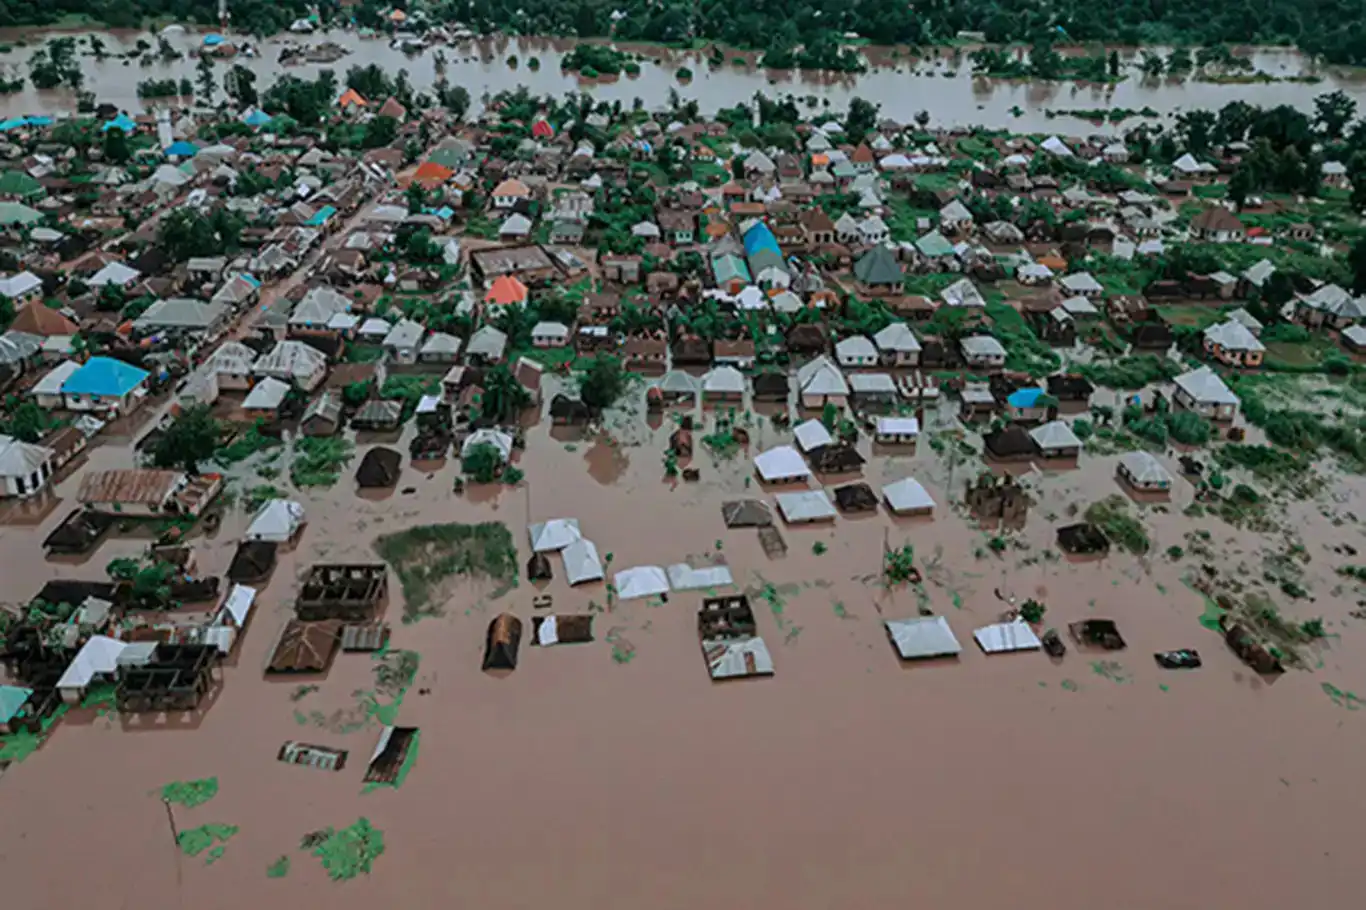 باران های شدید در تانزانیا منجر به سیل و رانش زمین شد: 155 نفر جان باختند